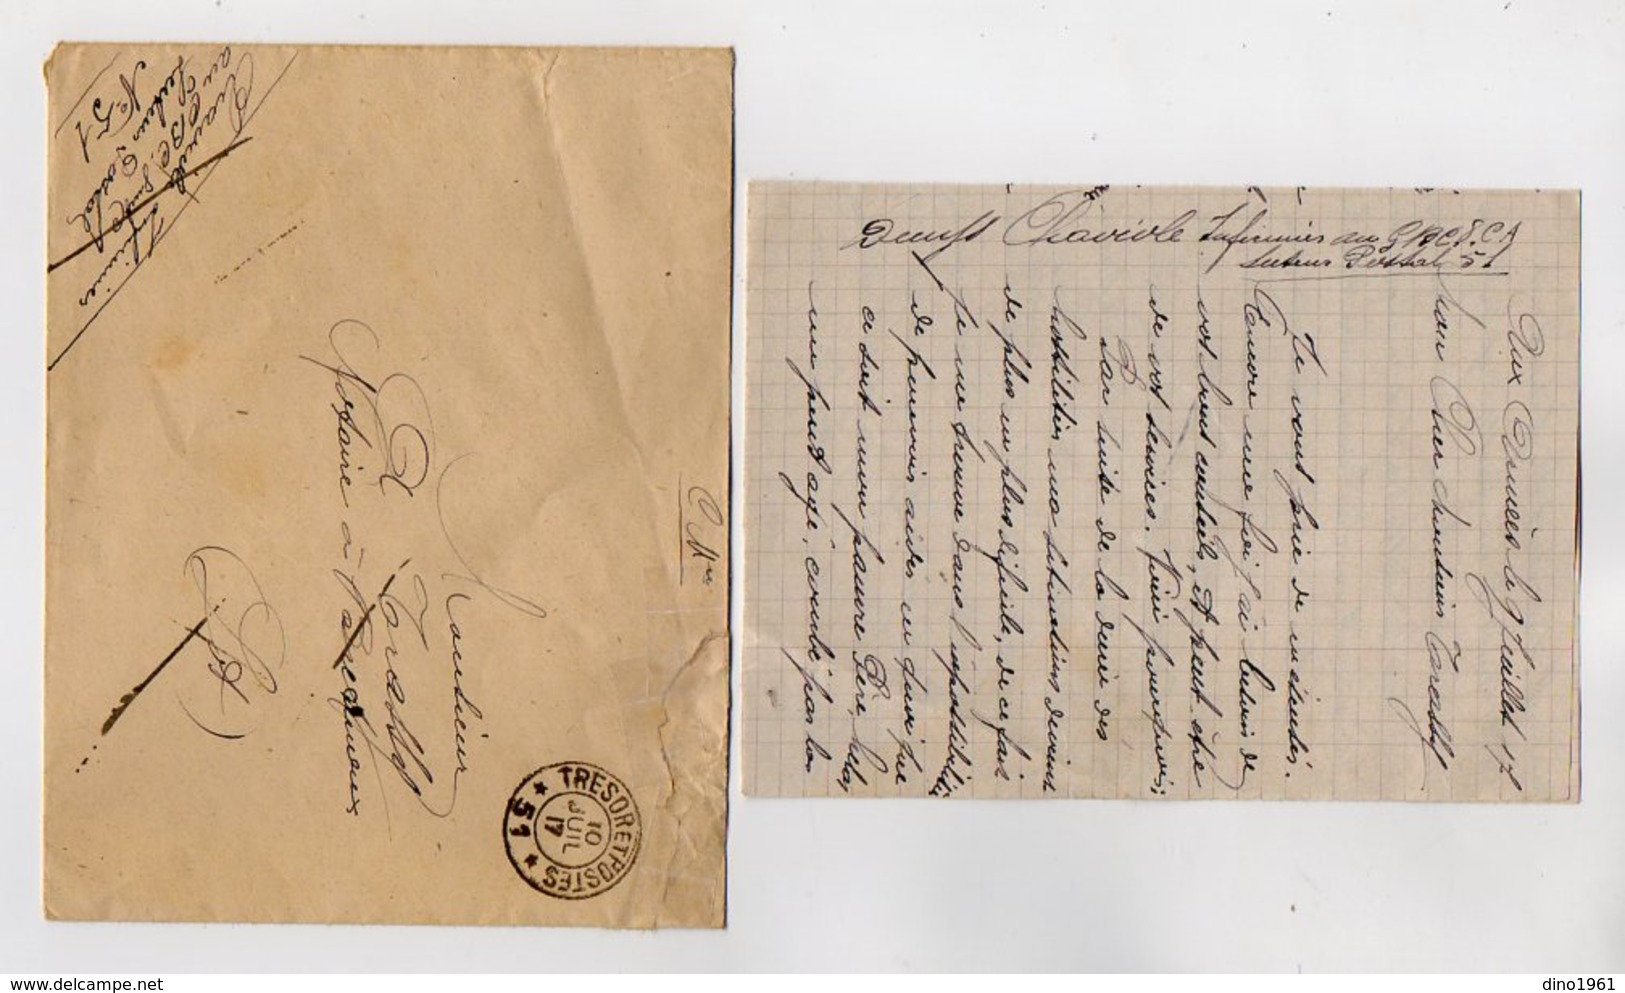 VP16.892 - MILITARIA - 1917 - Lettre Du Soldat CHAVIOLE Infirmier Au G.B.C .....Secteur Postal 51 - Dokumente